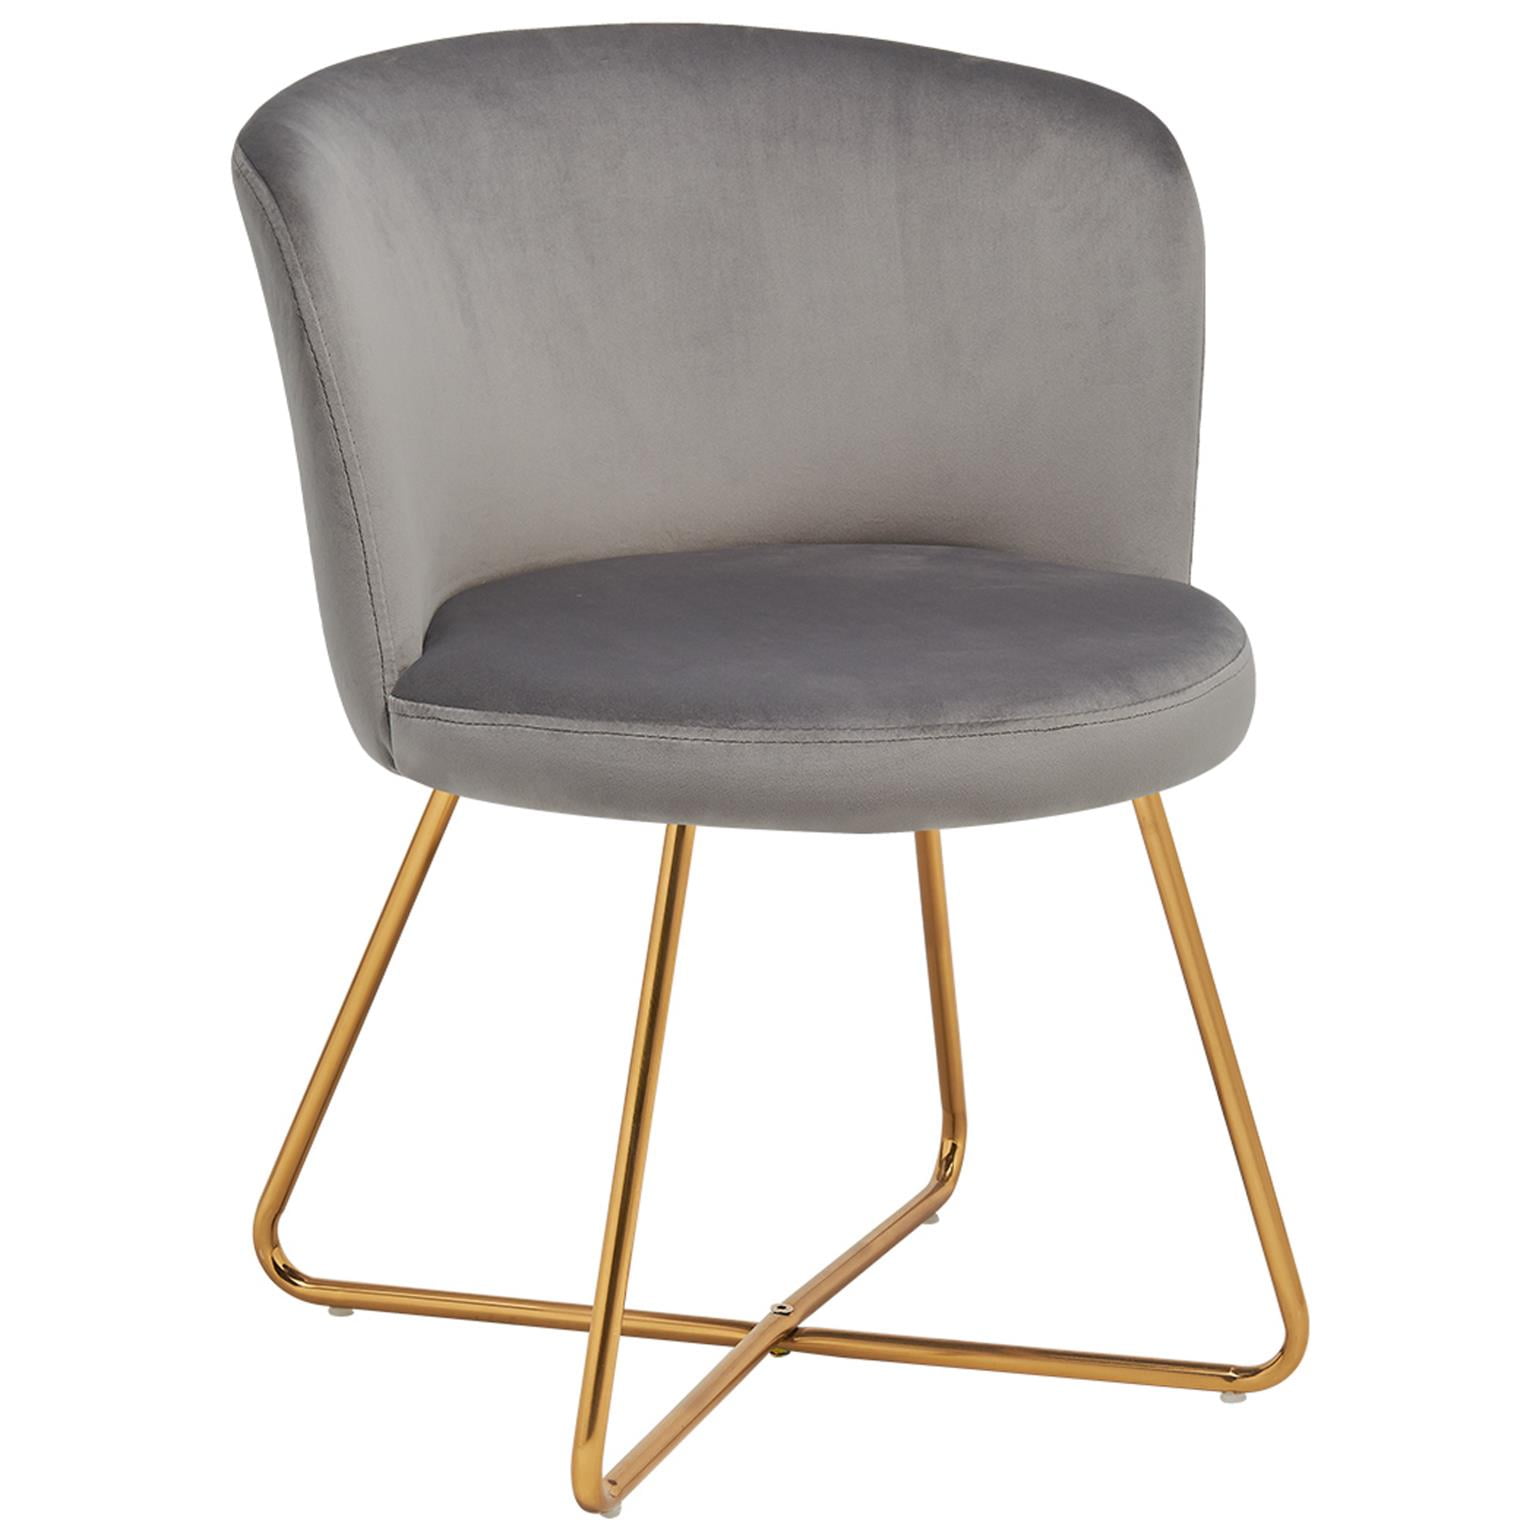 خبز محمص لغة مبسطة بنية تحتية  Myco Furniture Alexa Accent Chair - Walmart.com